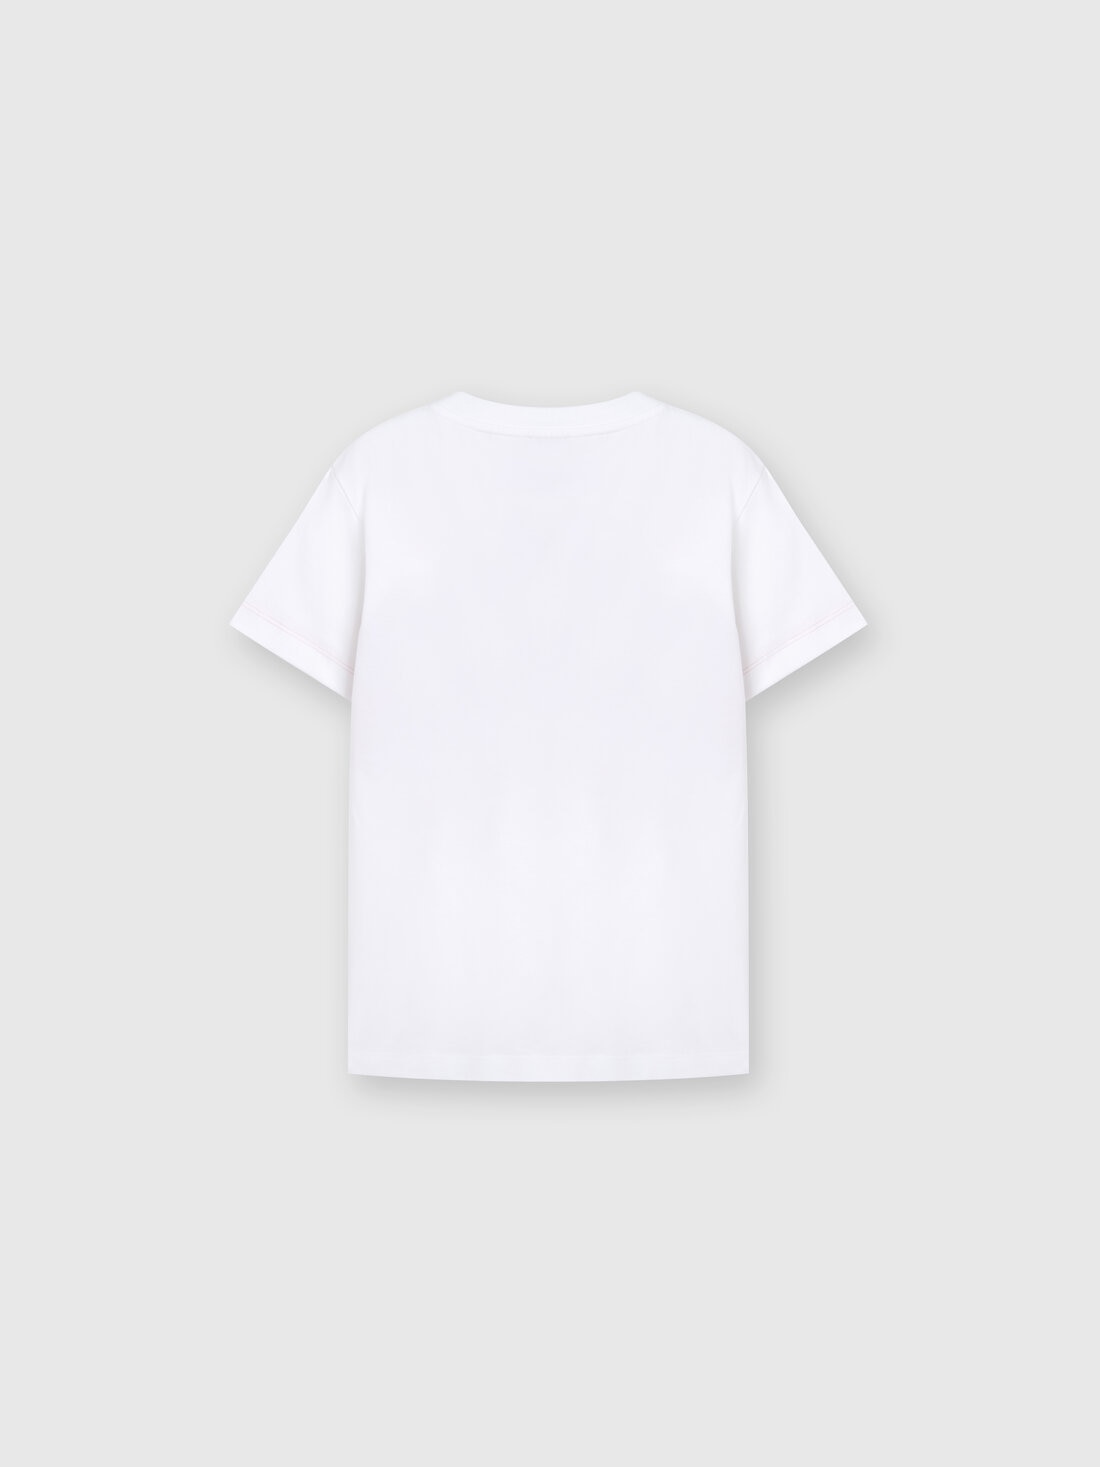 T-shirt in jersey di cotone con inserto chevron e logo, Multicolore  - KS24SL01BV00FVS019I - 1